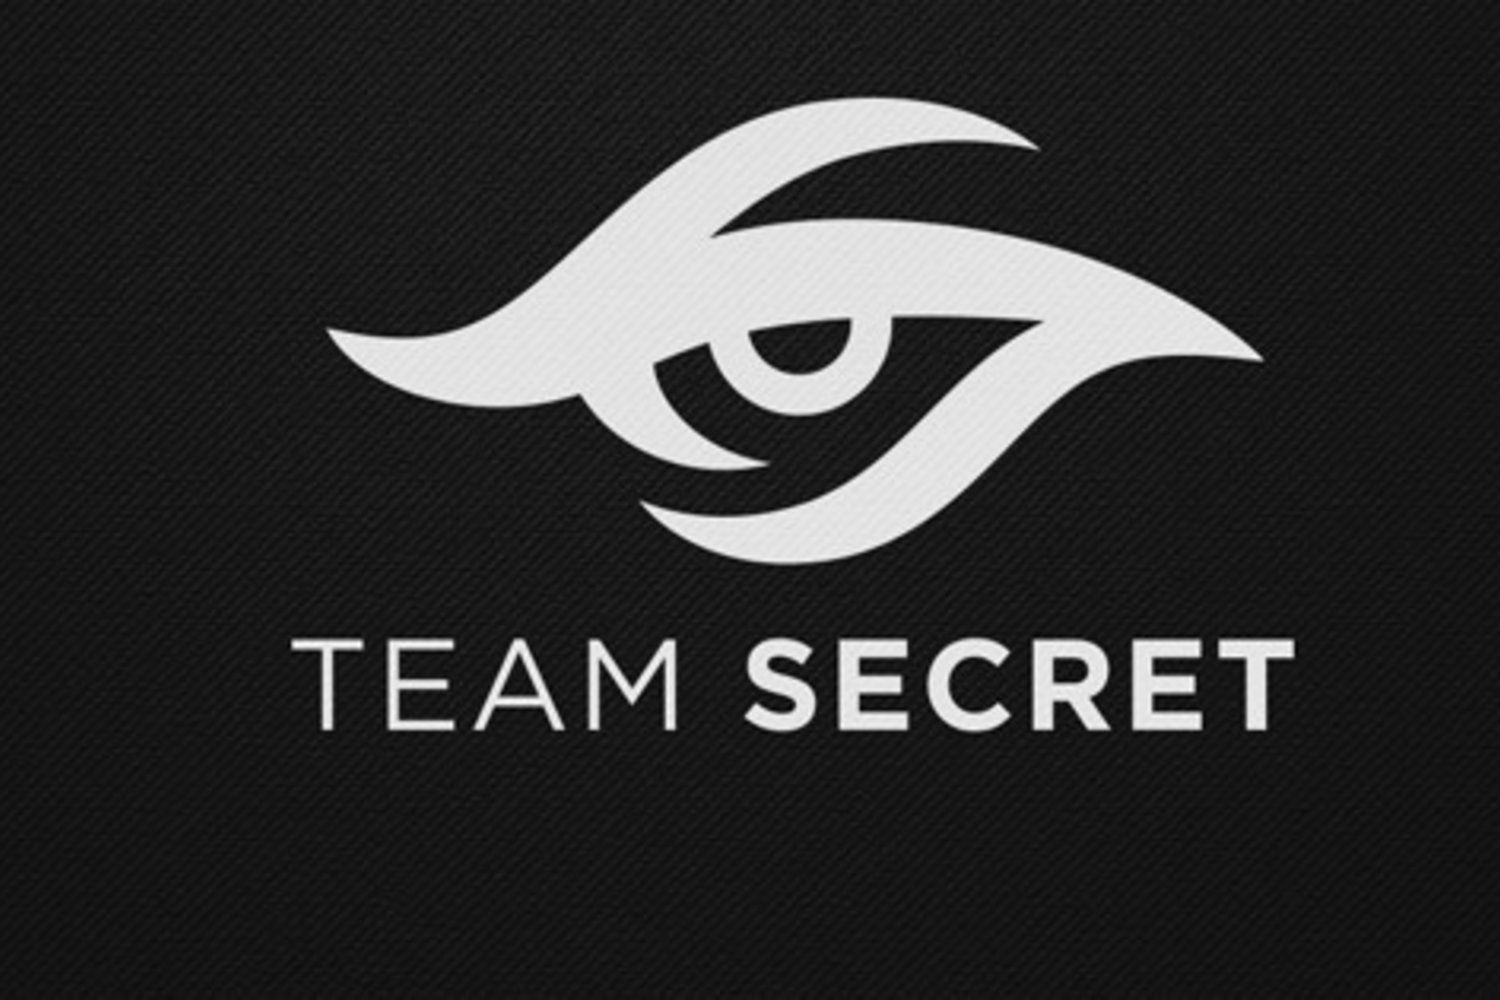 Zayac присоединился к составу Team Secret по Dota 2